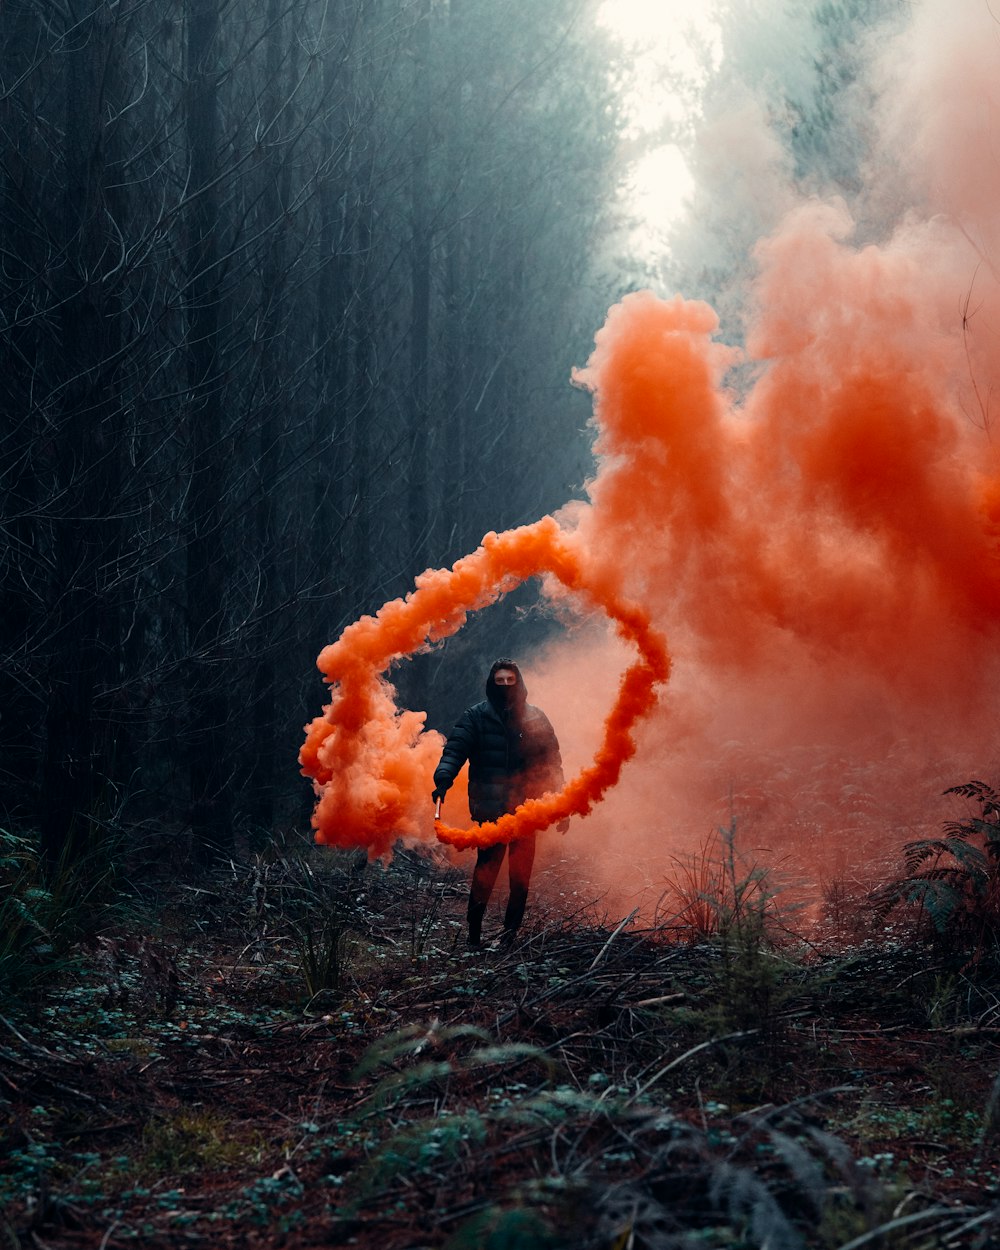 オレンジ色の煙が立ち込める茶色の草原に立つ黒いジャケットを着た人